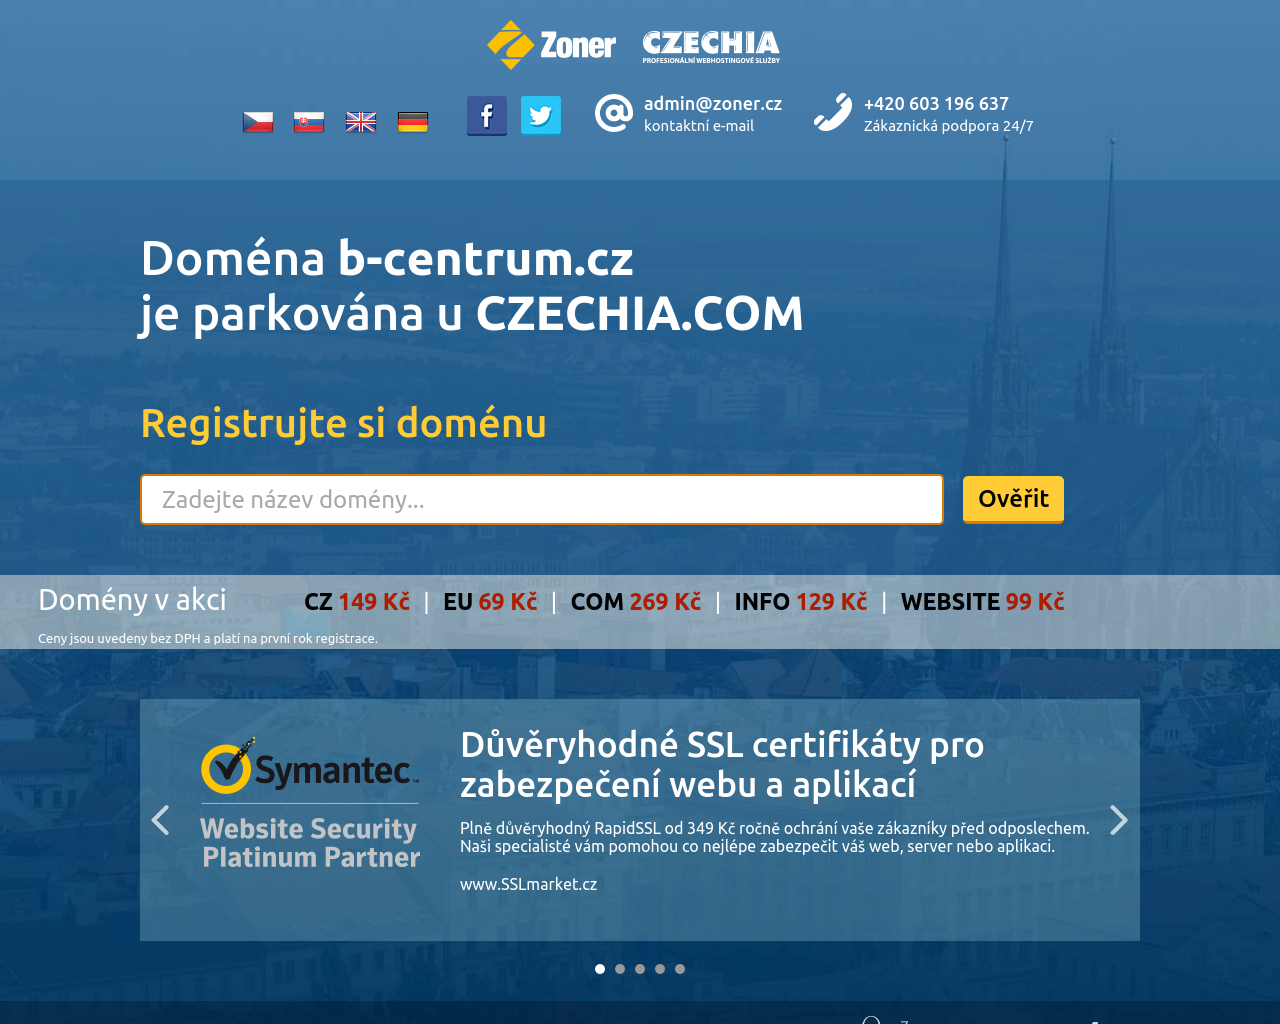 Site Image b-centrum.cz v 1280x1024